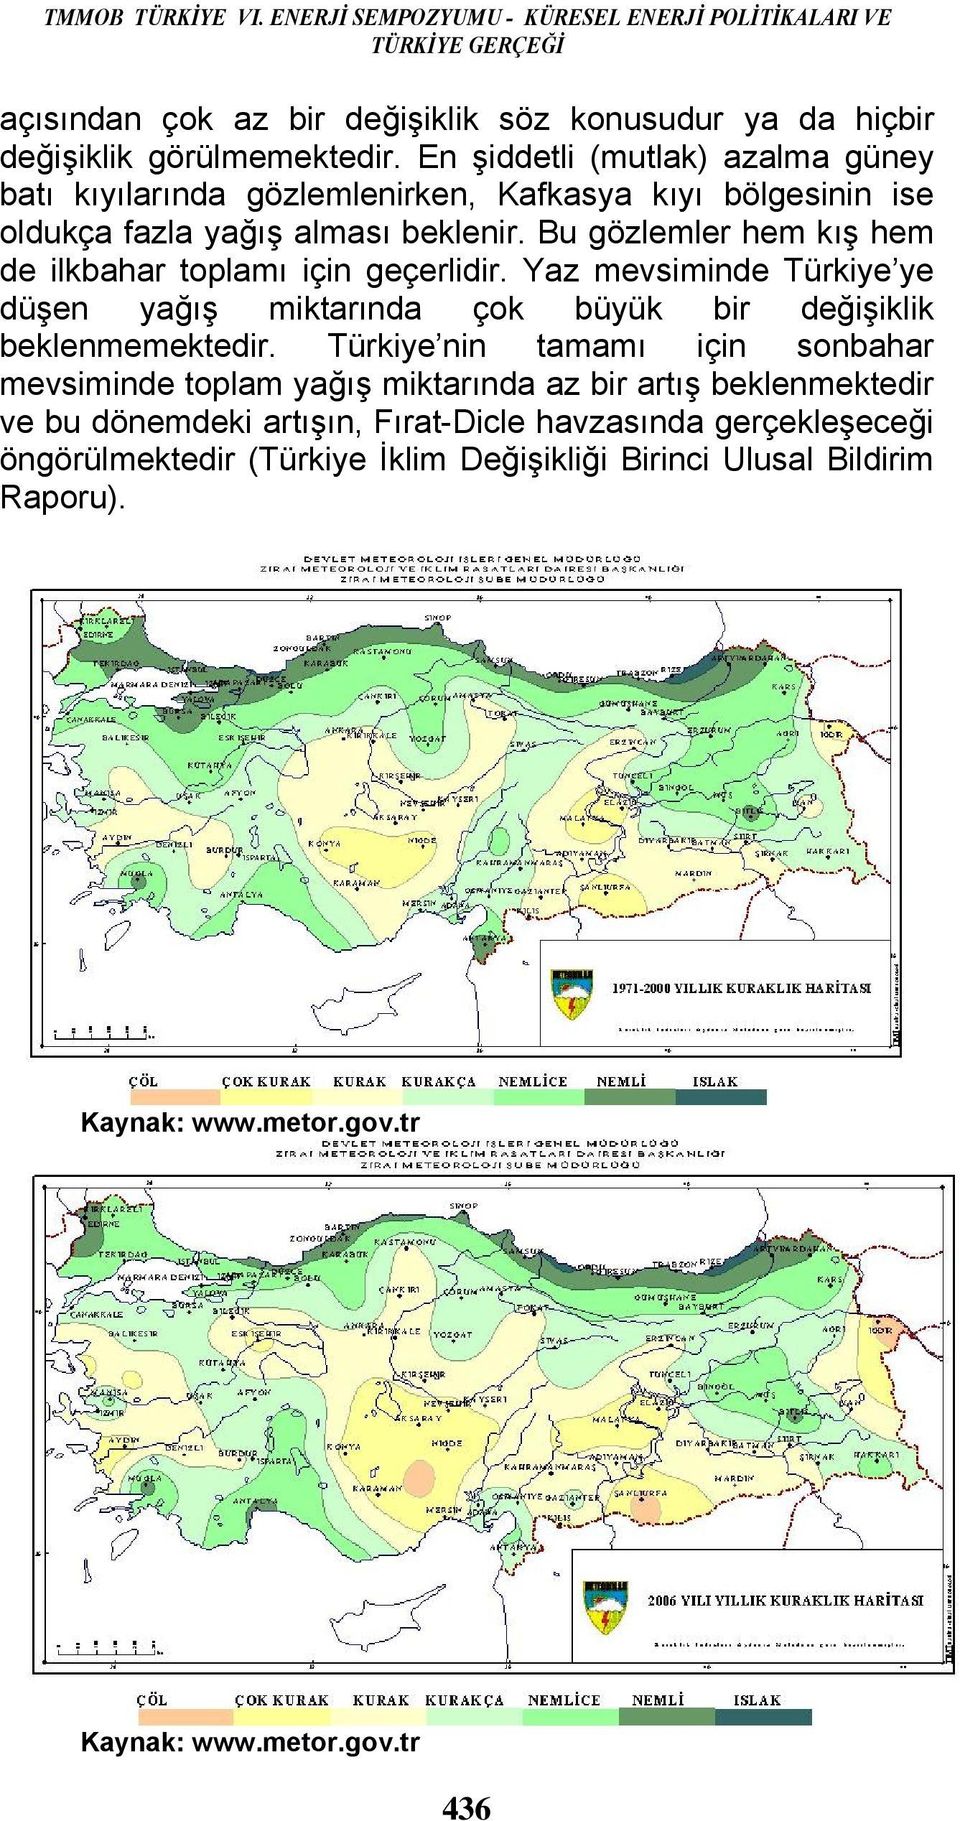 Bu gözlemler hem kış hem de ilkbahar toplamı için geçerlidir. Yaz mevsiminde Türkiye ye düşen yağış miktarında çok büyük bir değişiklik beklenmemektedir.